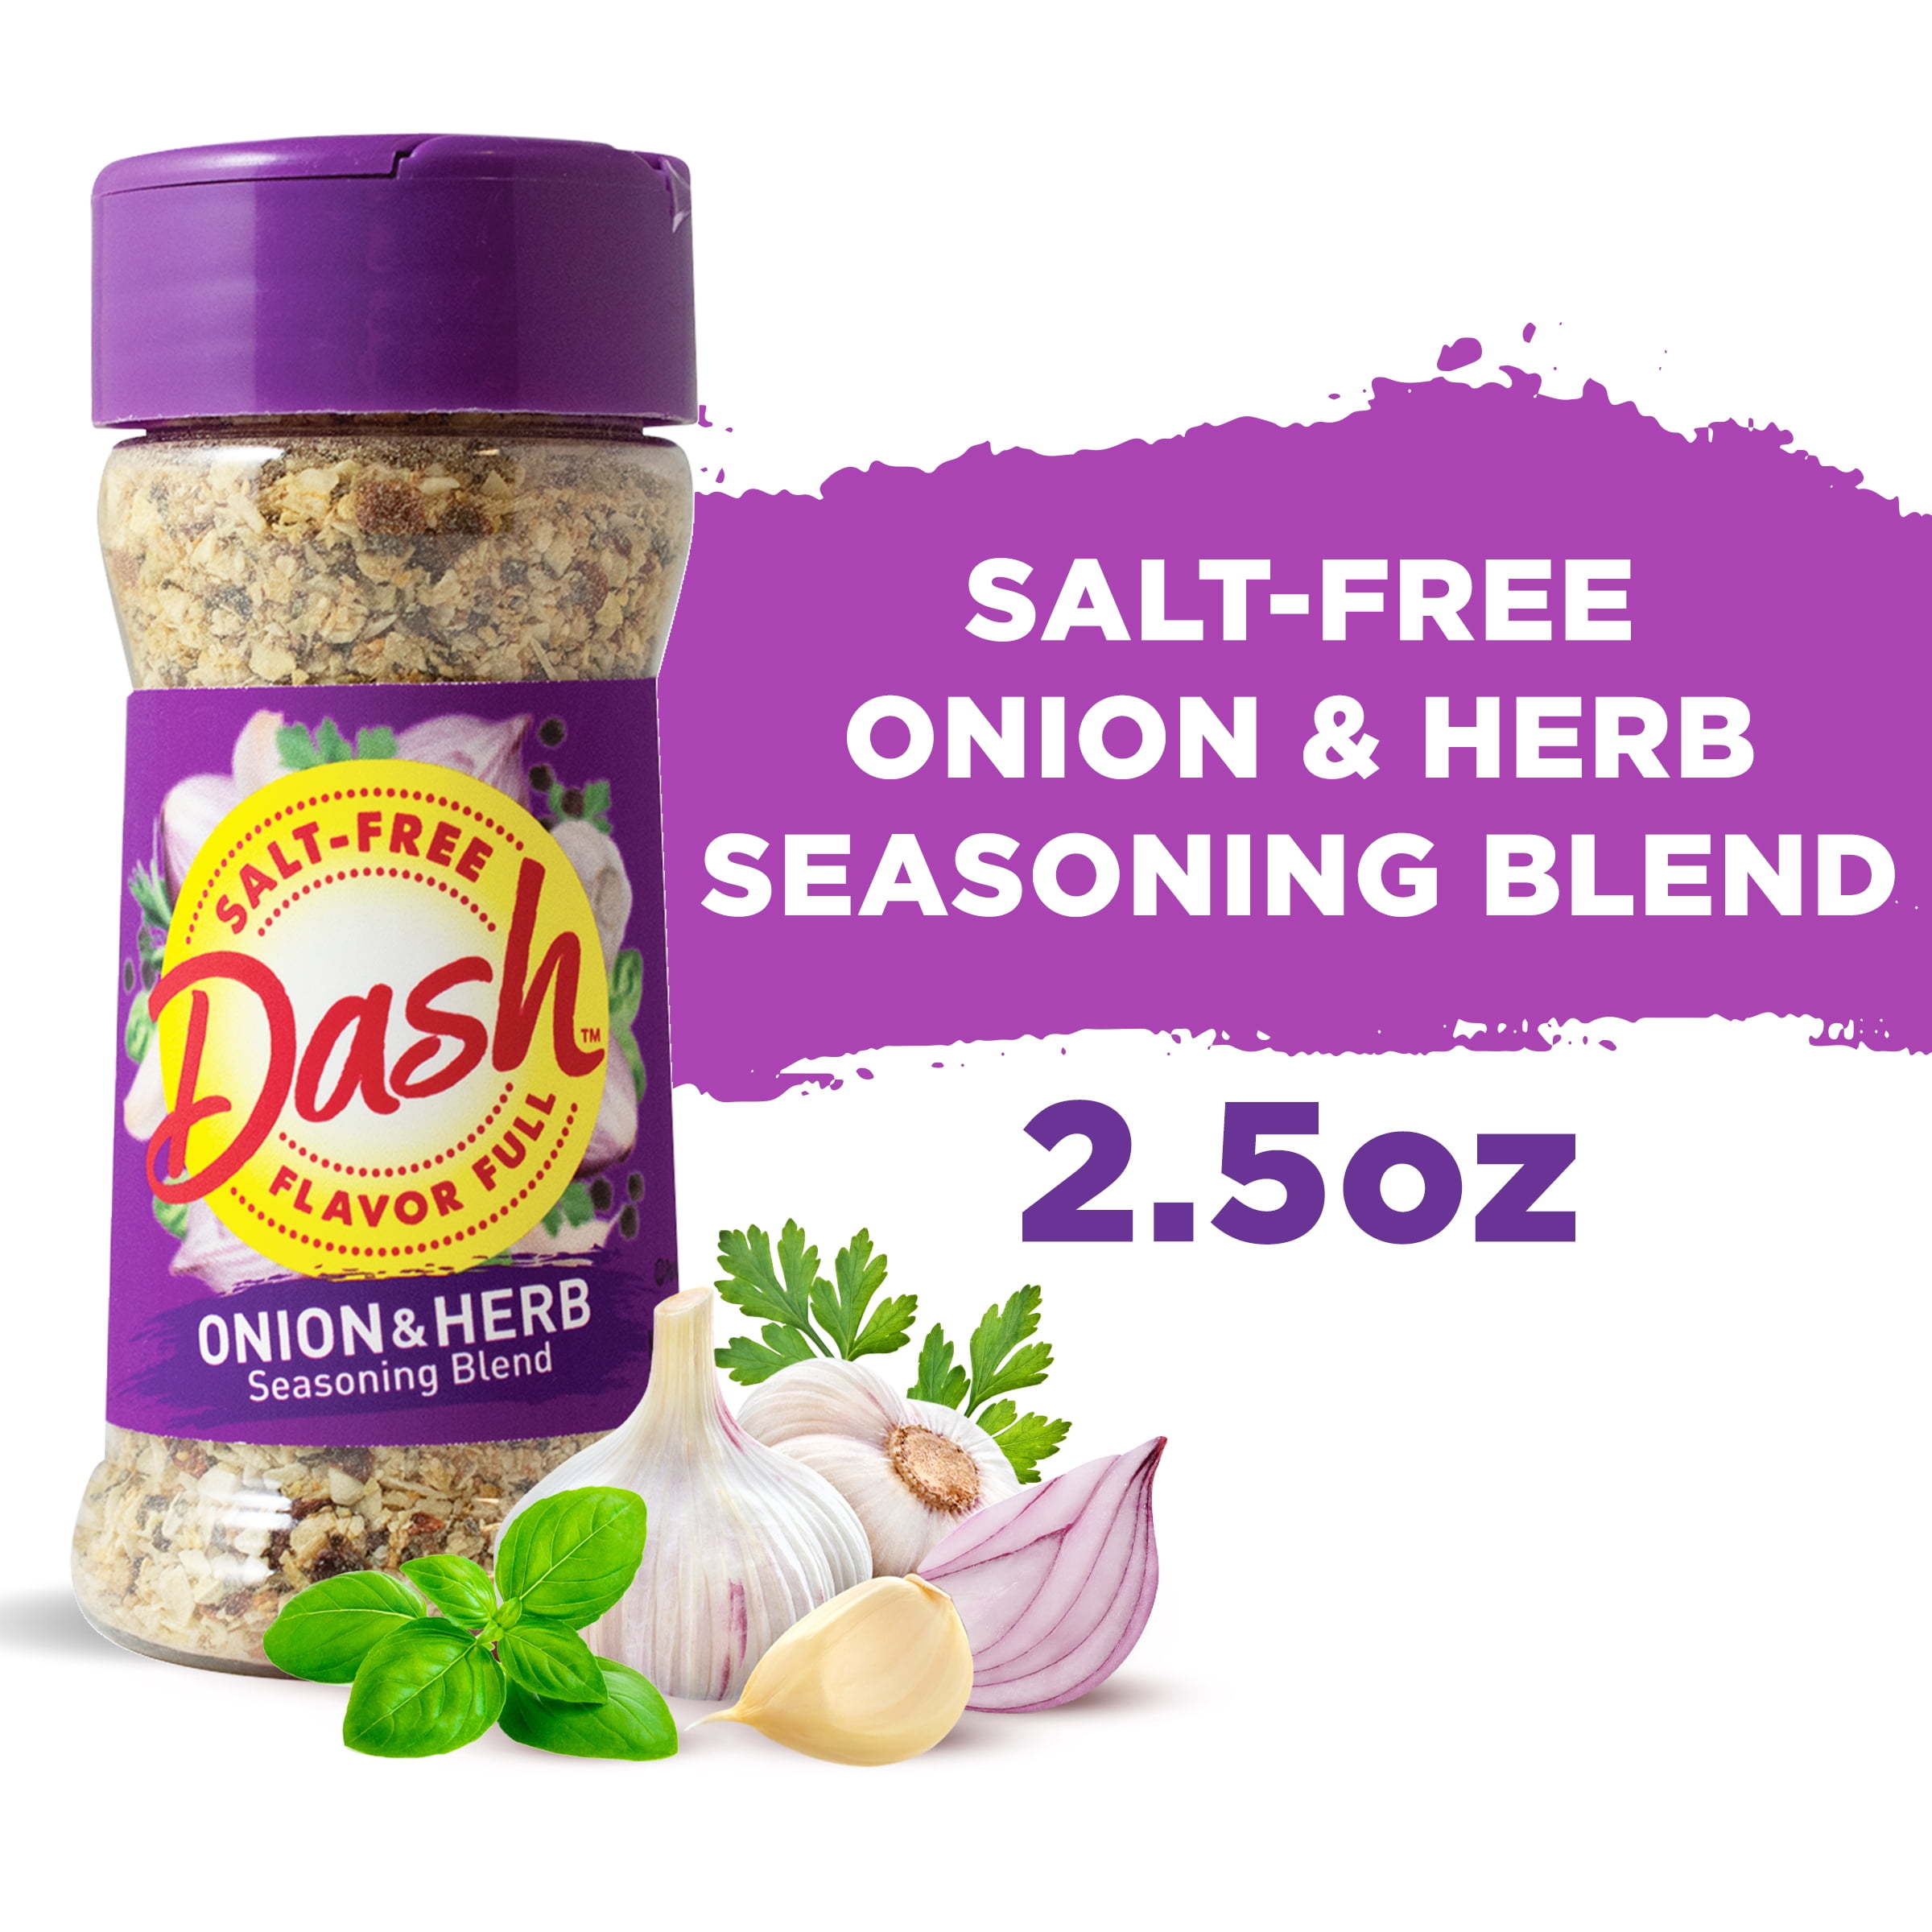 Mrs. Dash Salt Free Seasonings Review & Giveaway (ends 4/16) - Koupon Karen